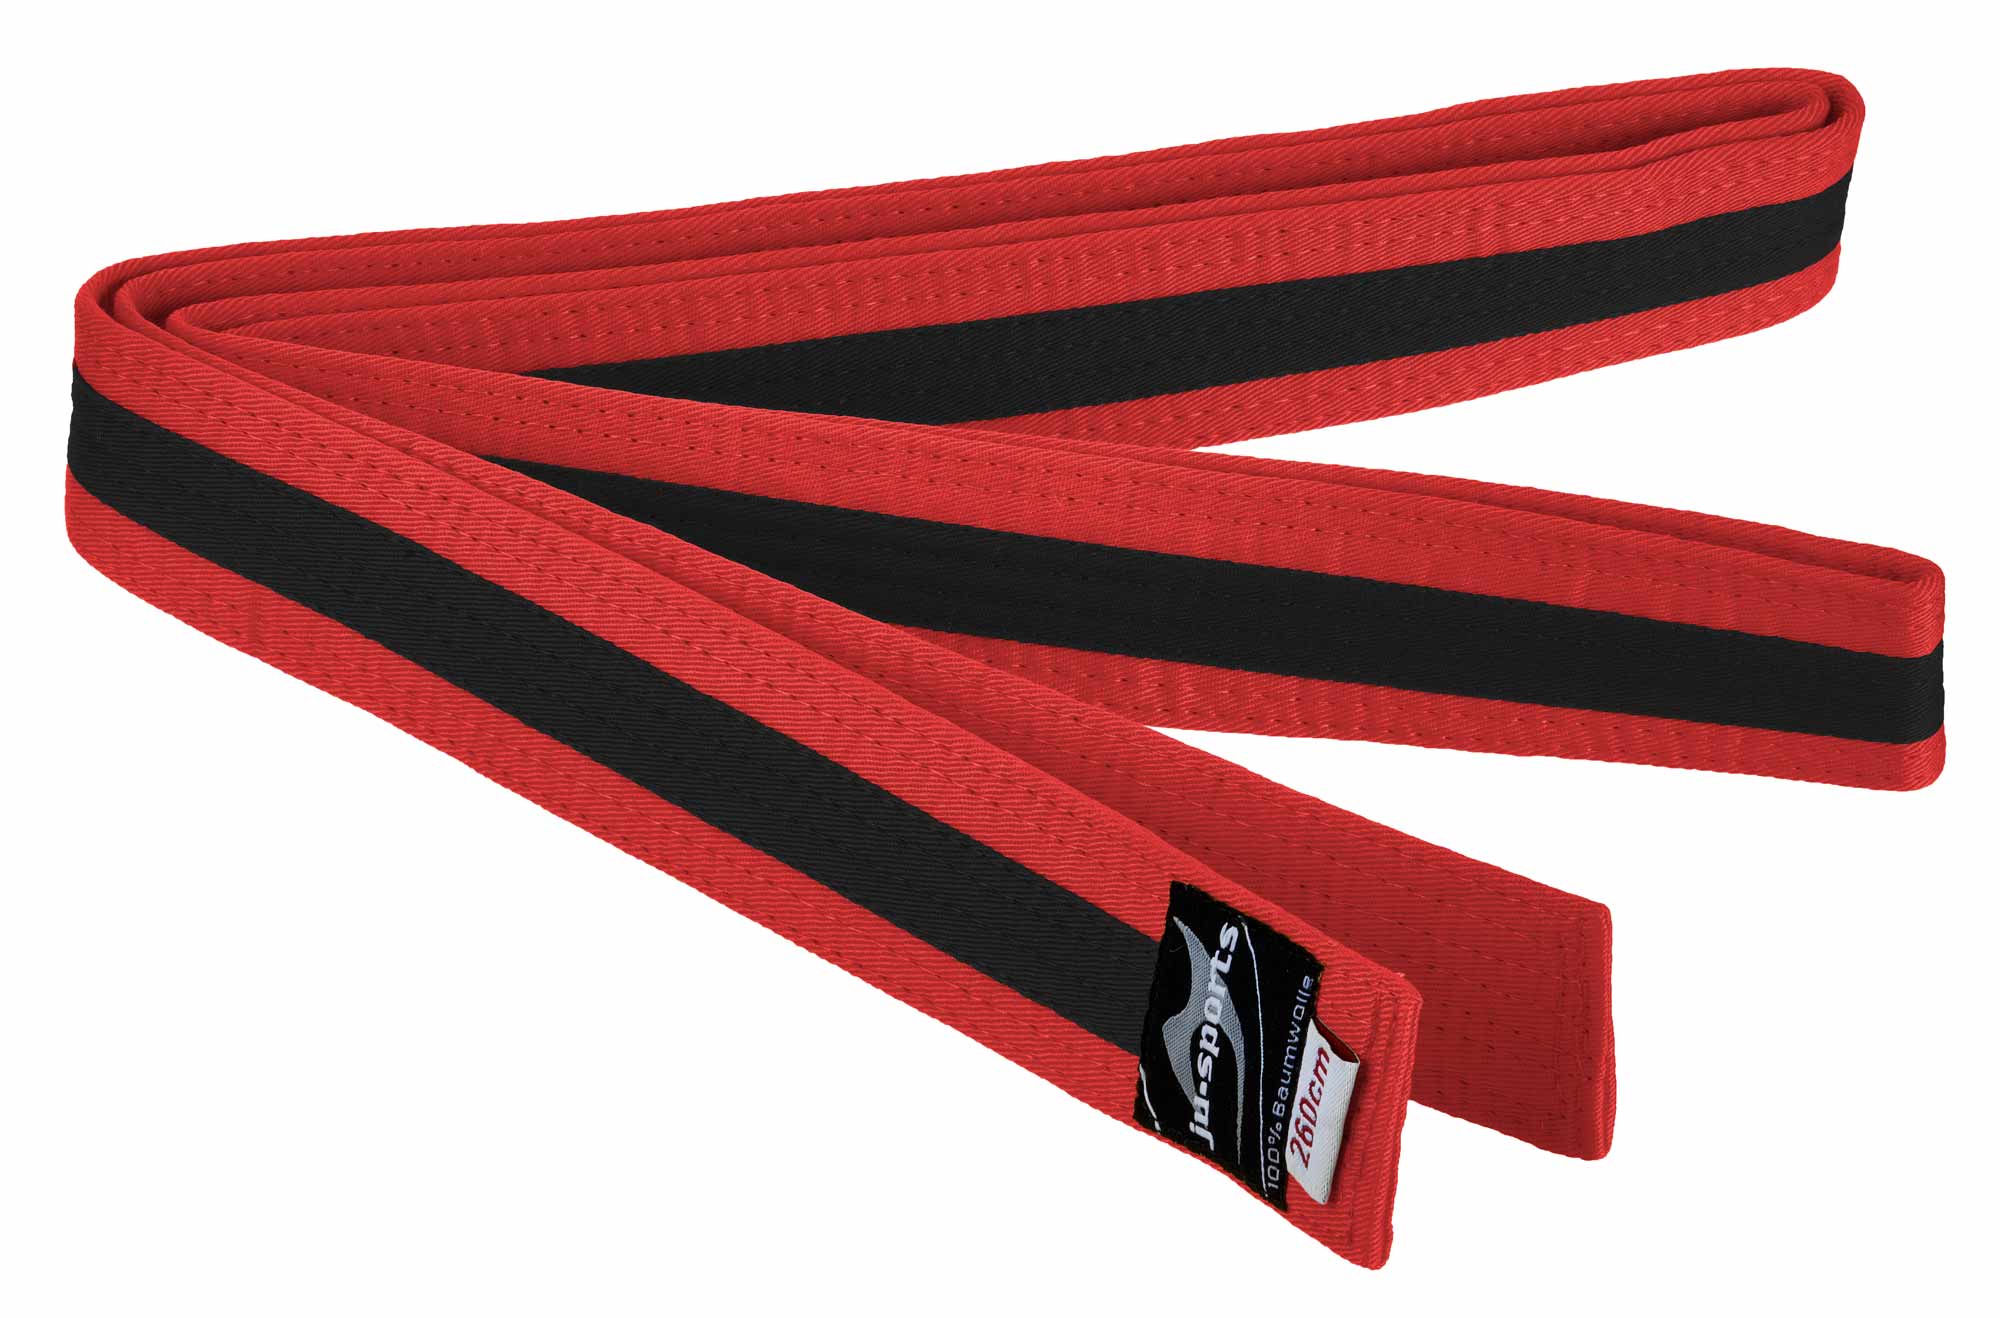 Ju-Sports budo belt red/black/red